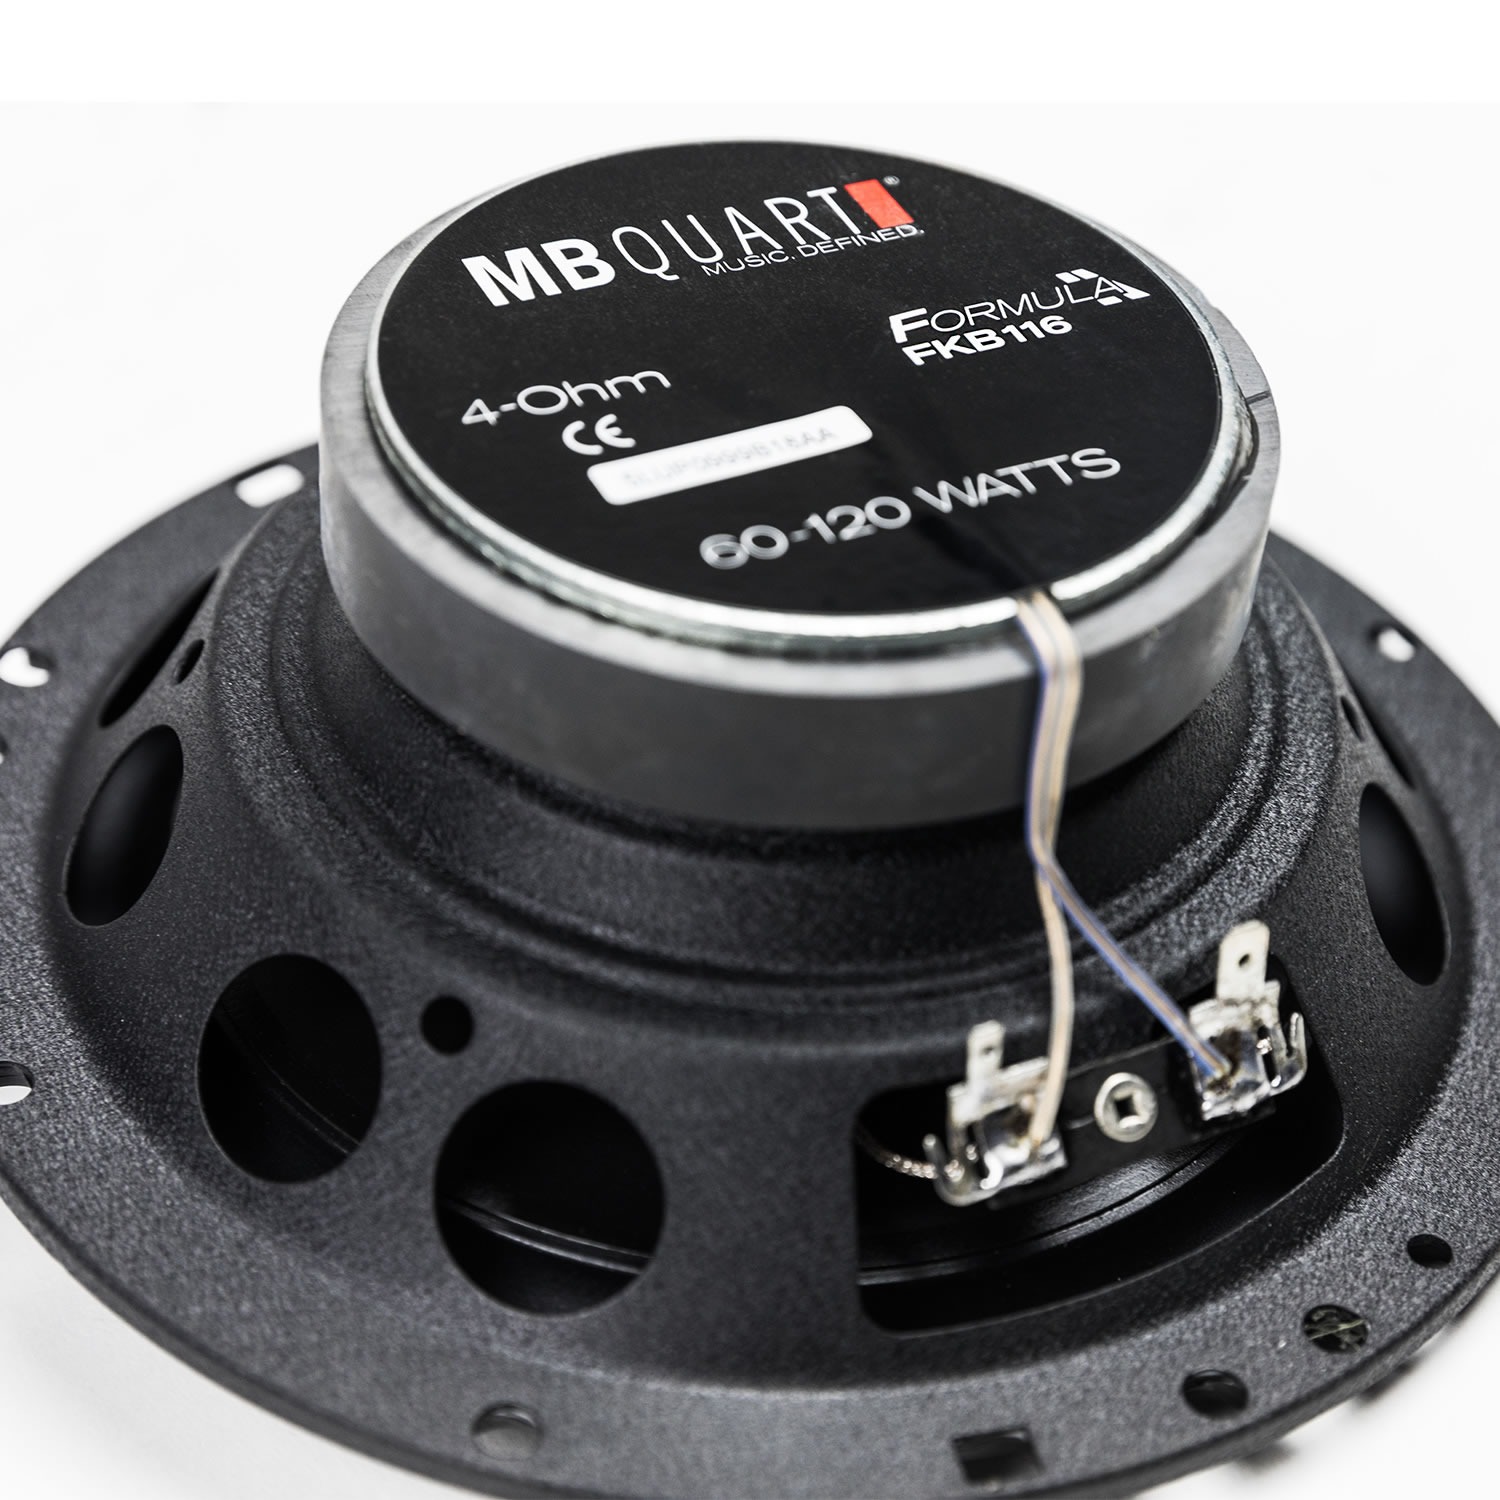 MB Quart Formula 6.5 inch 3-Way coaxial car Speakers